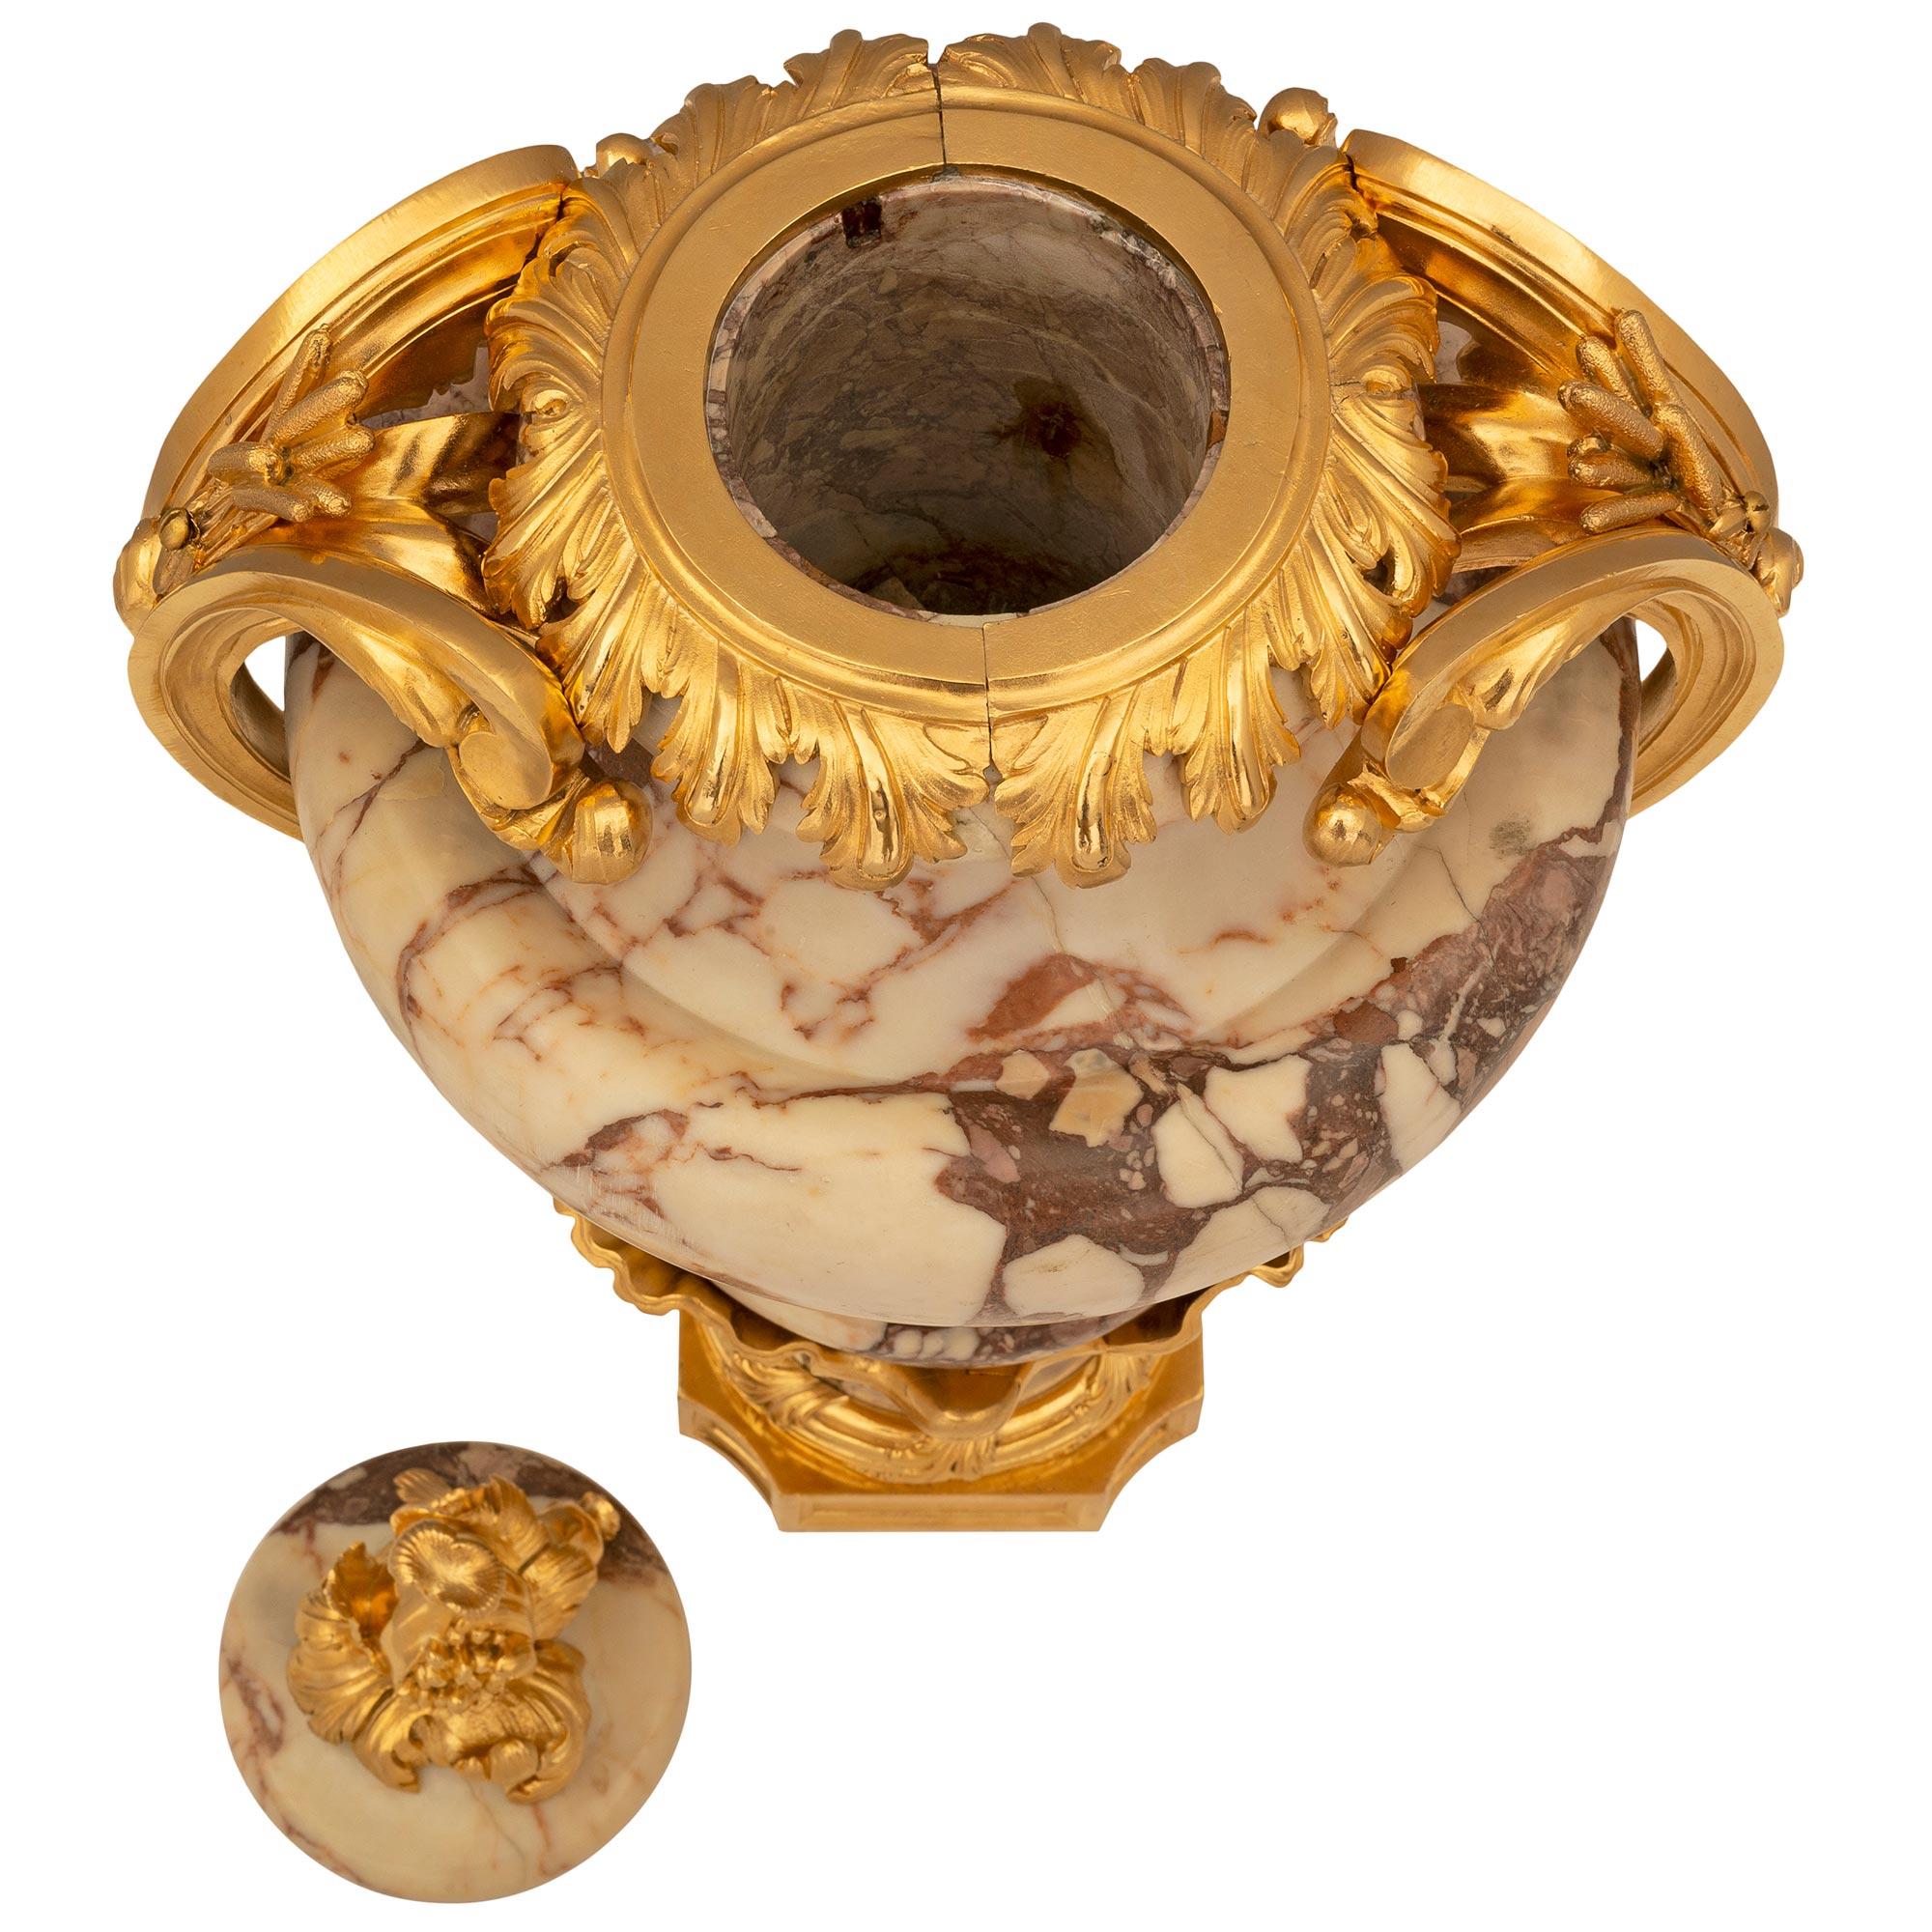 Exceptionnelle urne française du XIXe siècle, de style Louis XV, en marbre Brèche Violette et bronze doré. L'impressionnante urne/trophée est surélevée par une base carrée en bronze doré aux angles concaves et aux motifs décoratifs martelés en